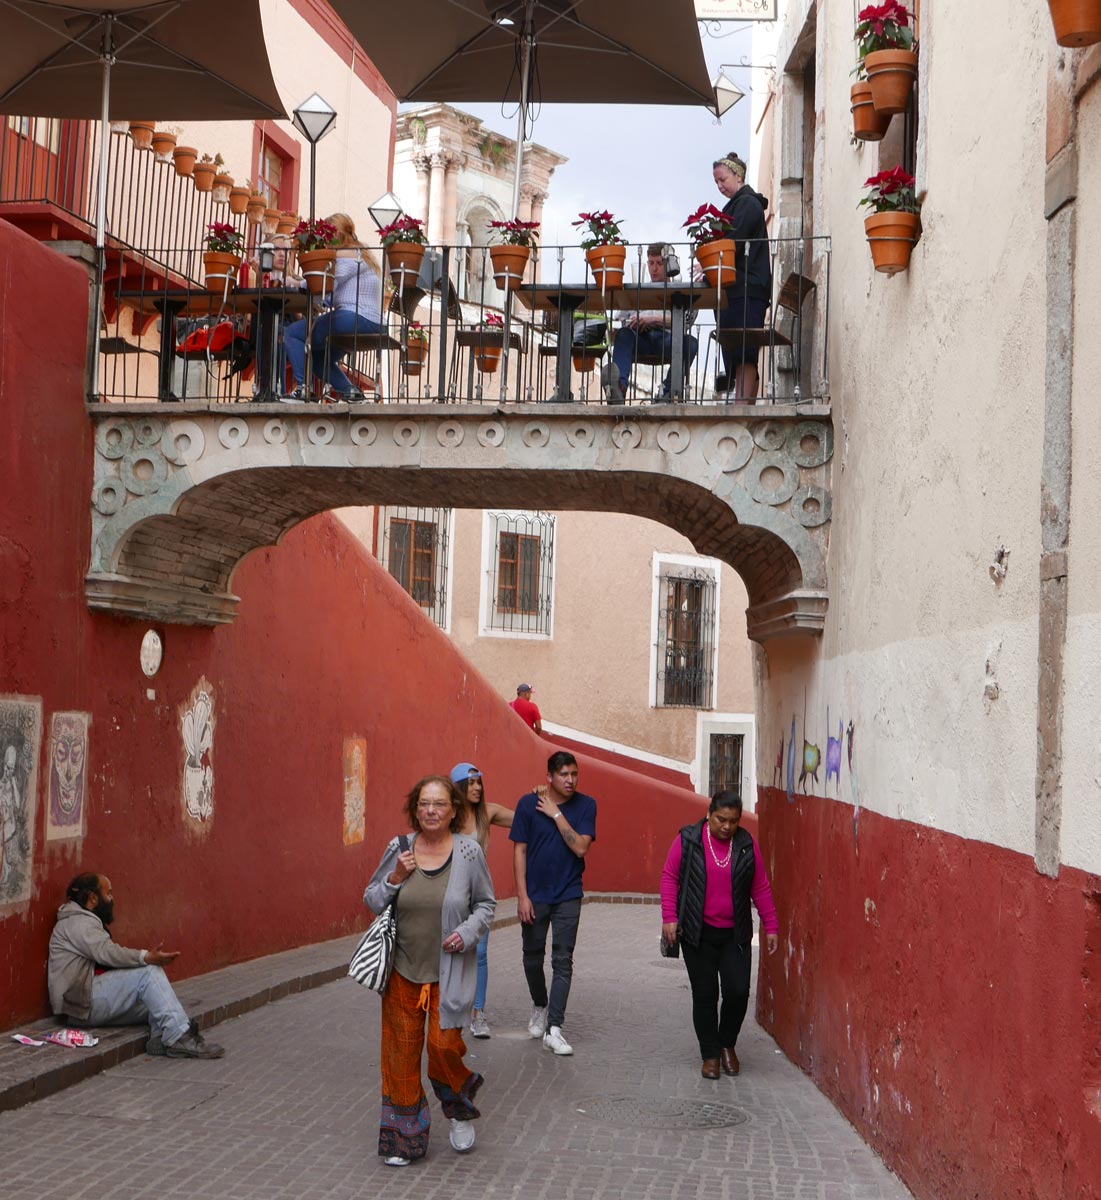 Restaurant bridge in the narrow streets of Guanajuato centre